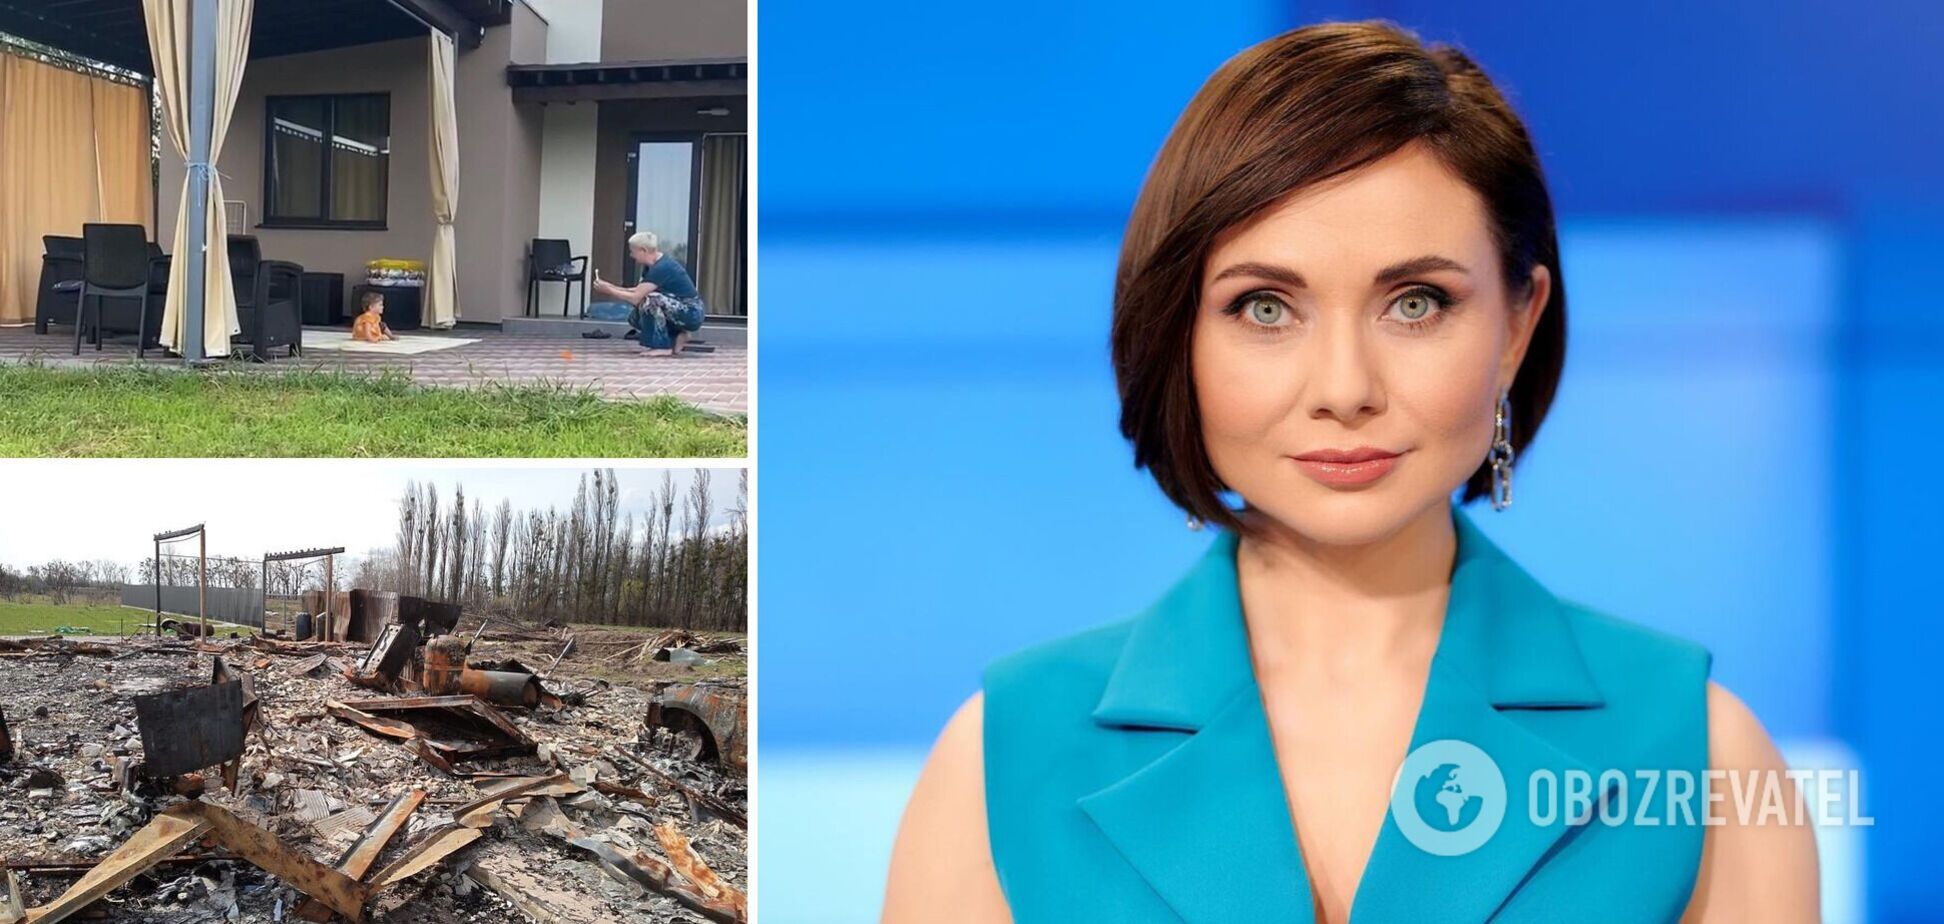 Відома українська телеведуча показала, що окупанти зробили з її дачею під Києвом. Фото до і після